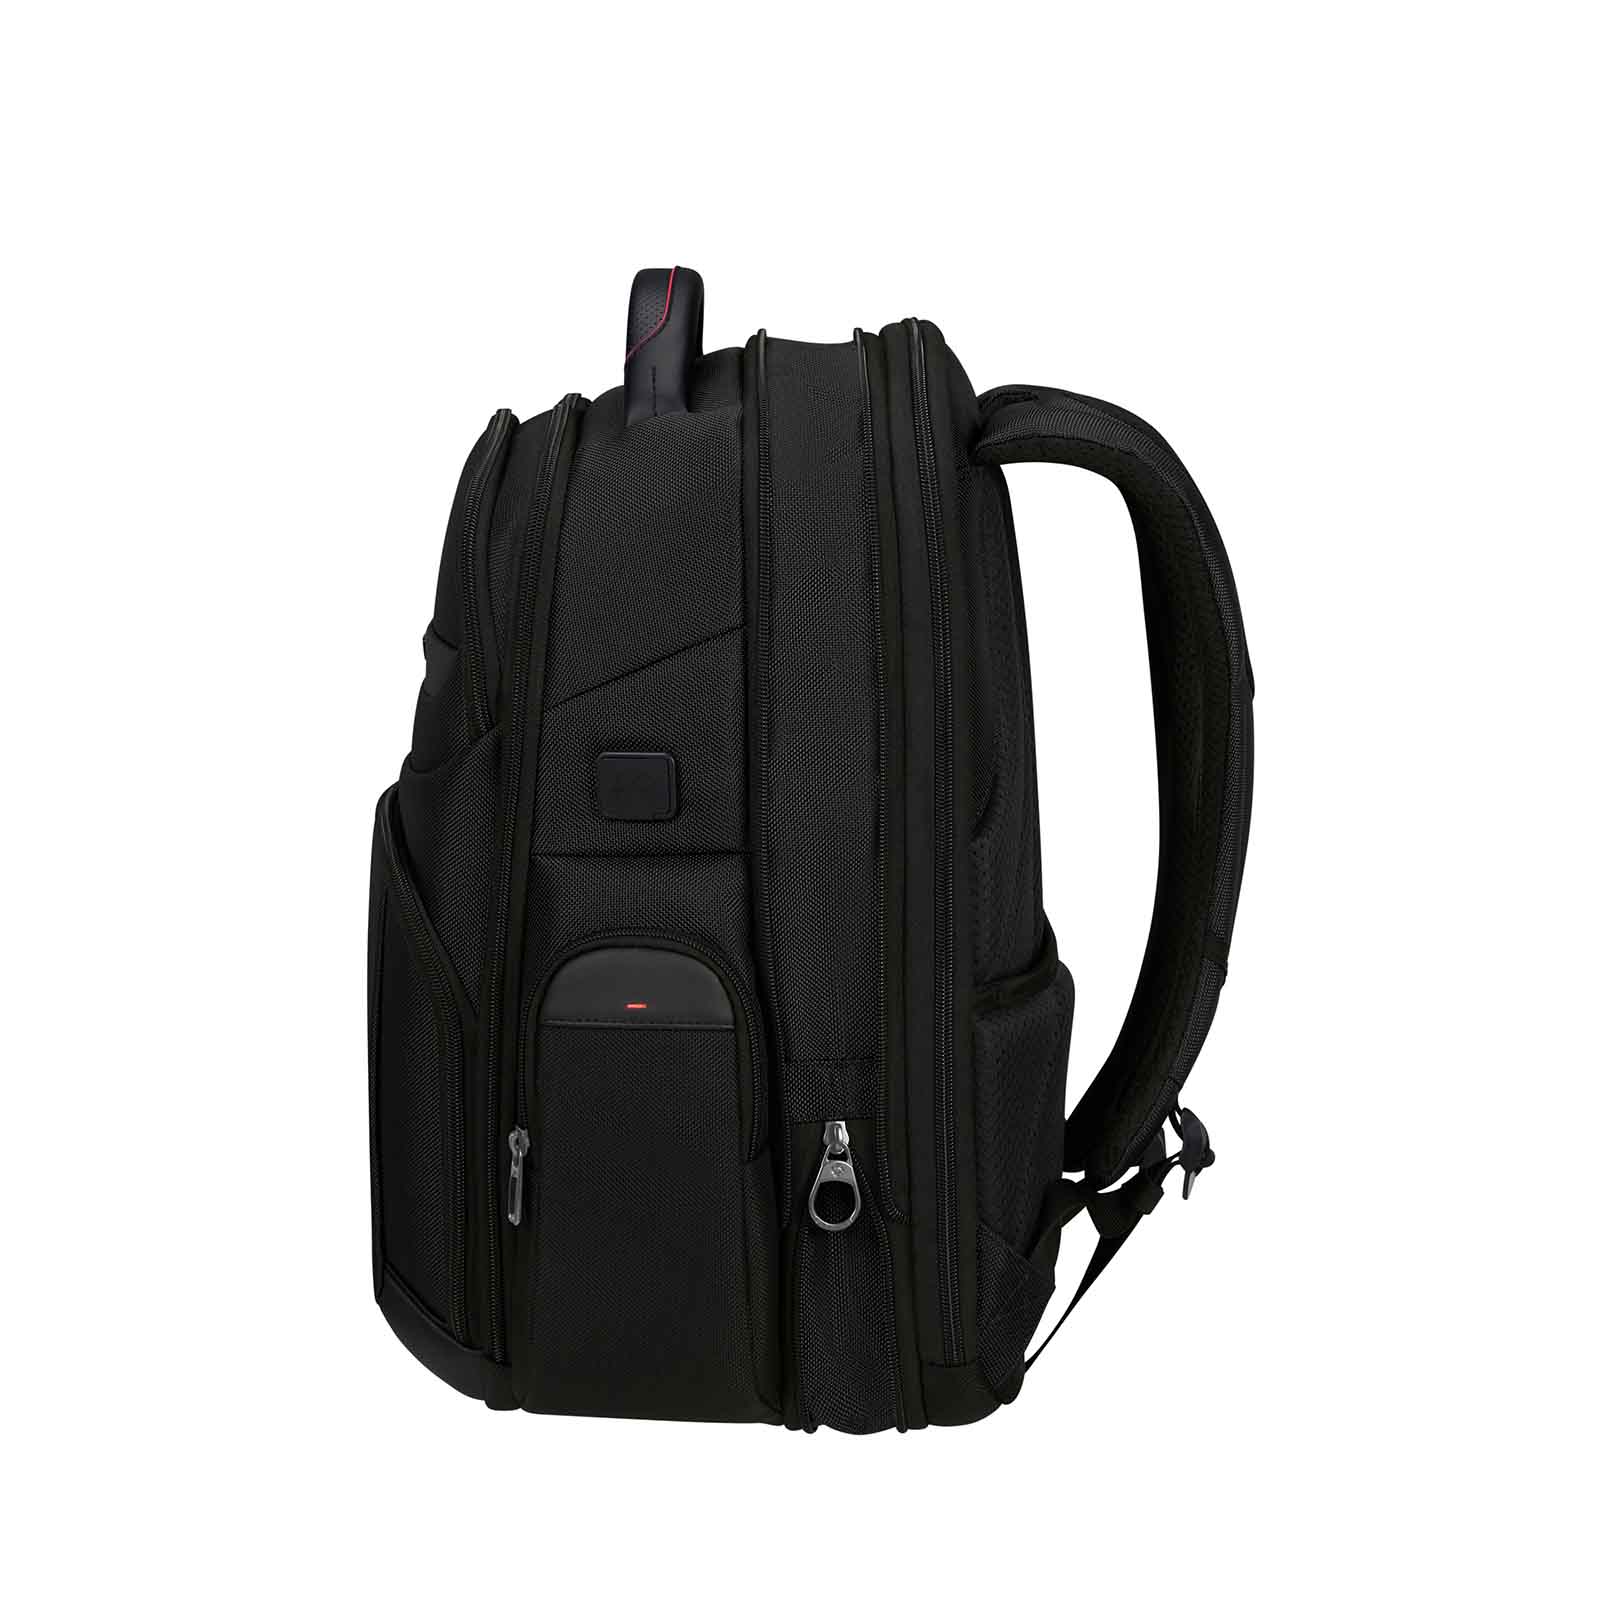 Samsonite-Pro-Dlx-6-Laptop-Backpack-15-Inch-Expander